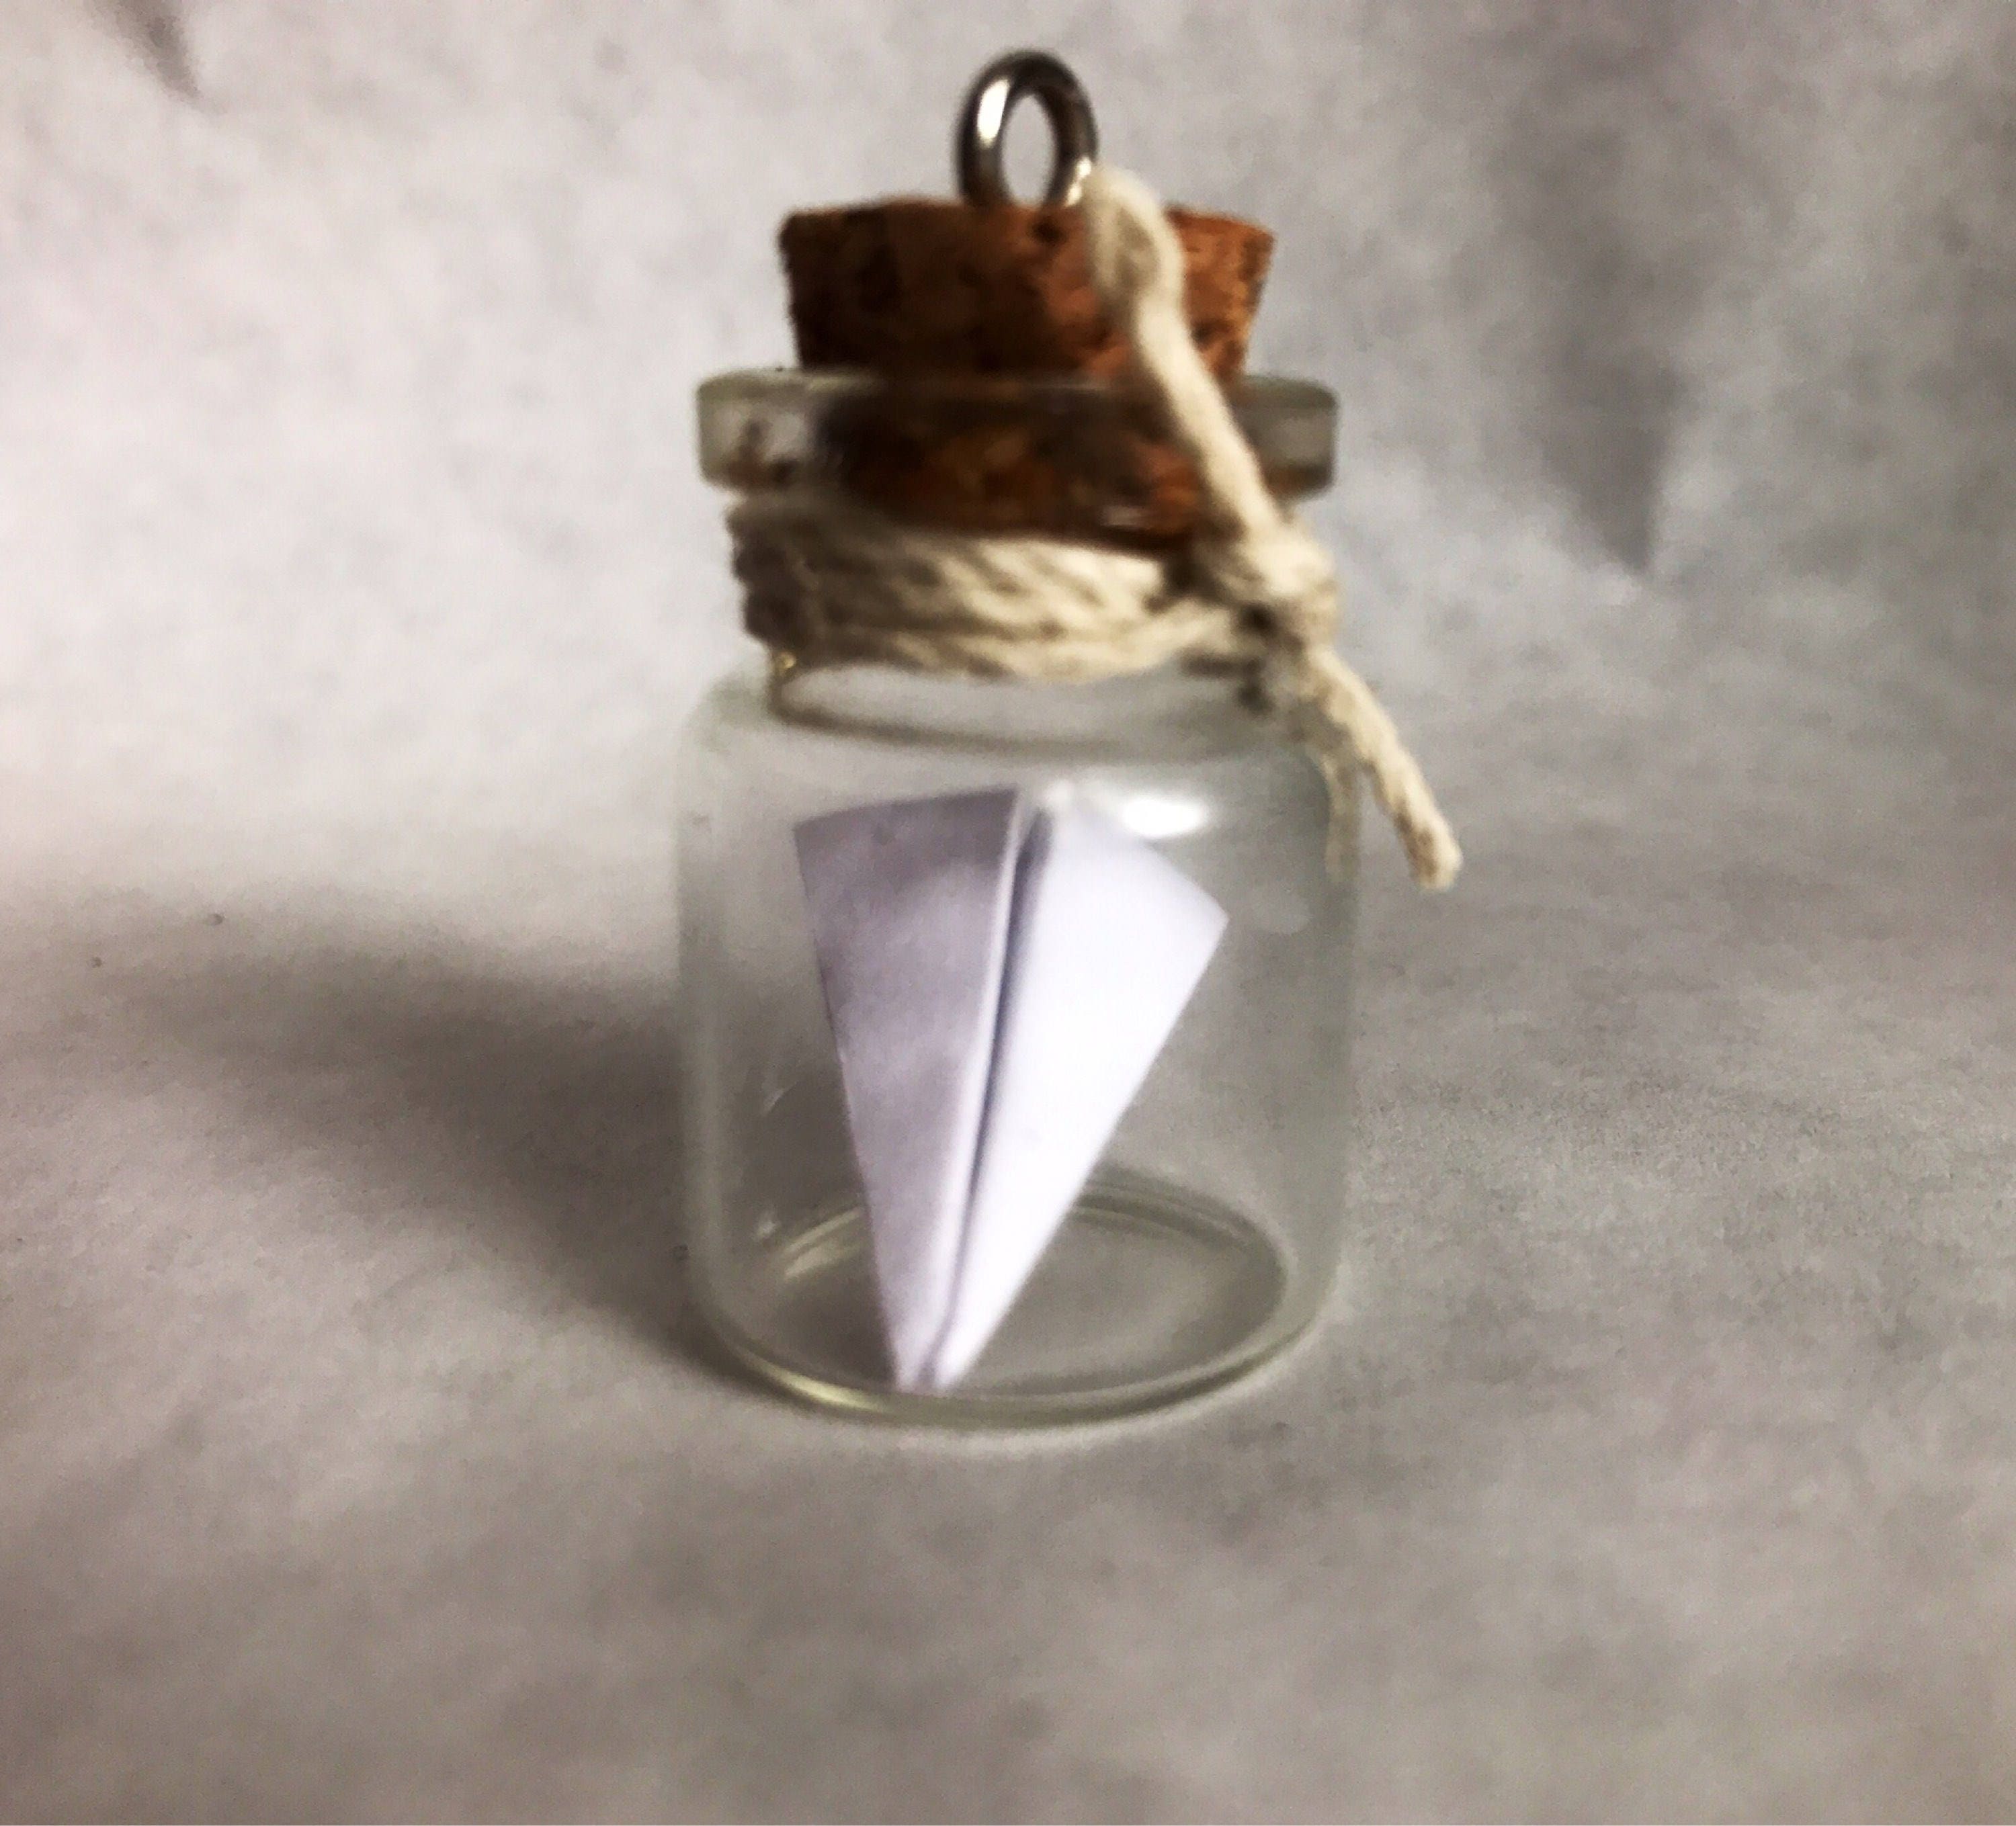 Origami paper plane necklace – Mizyan Jewelry